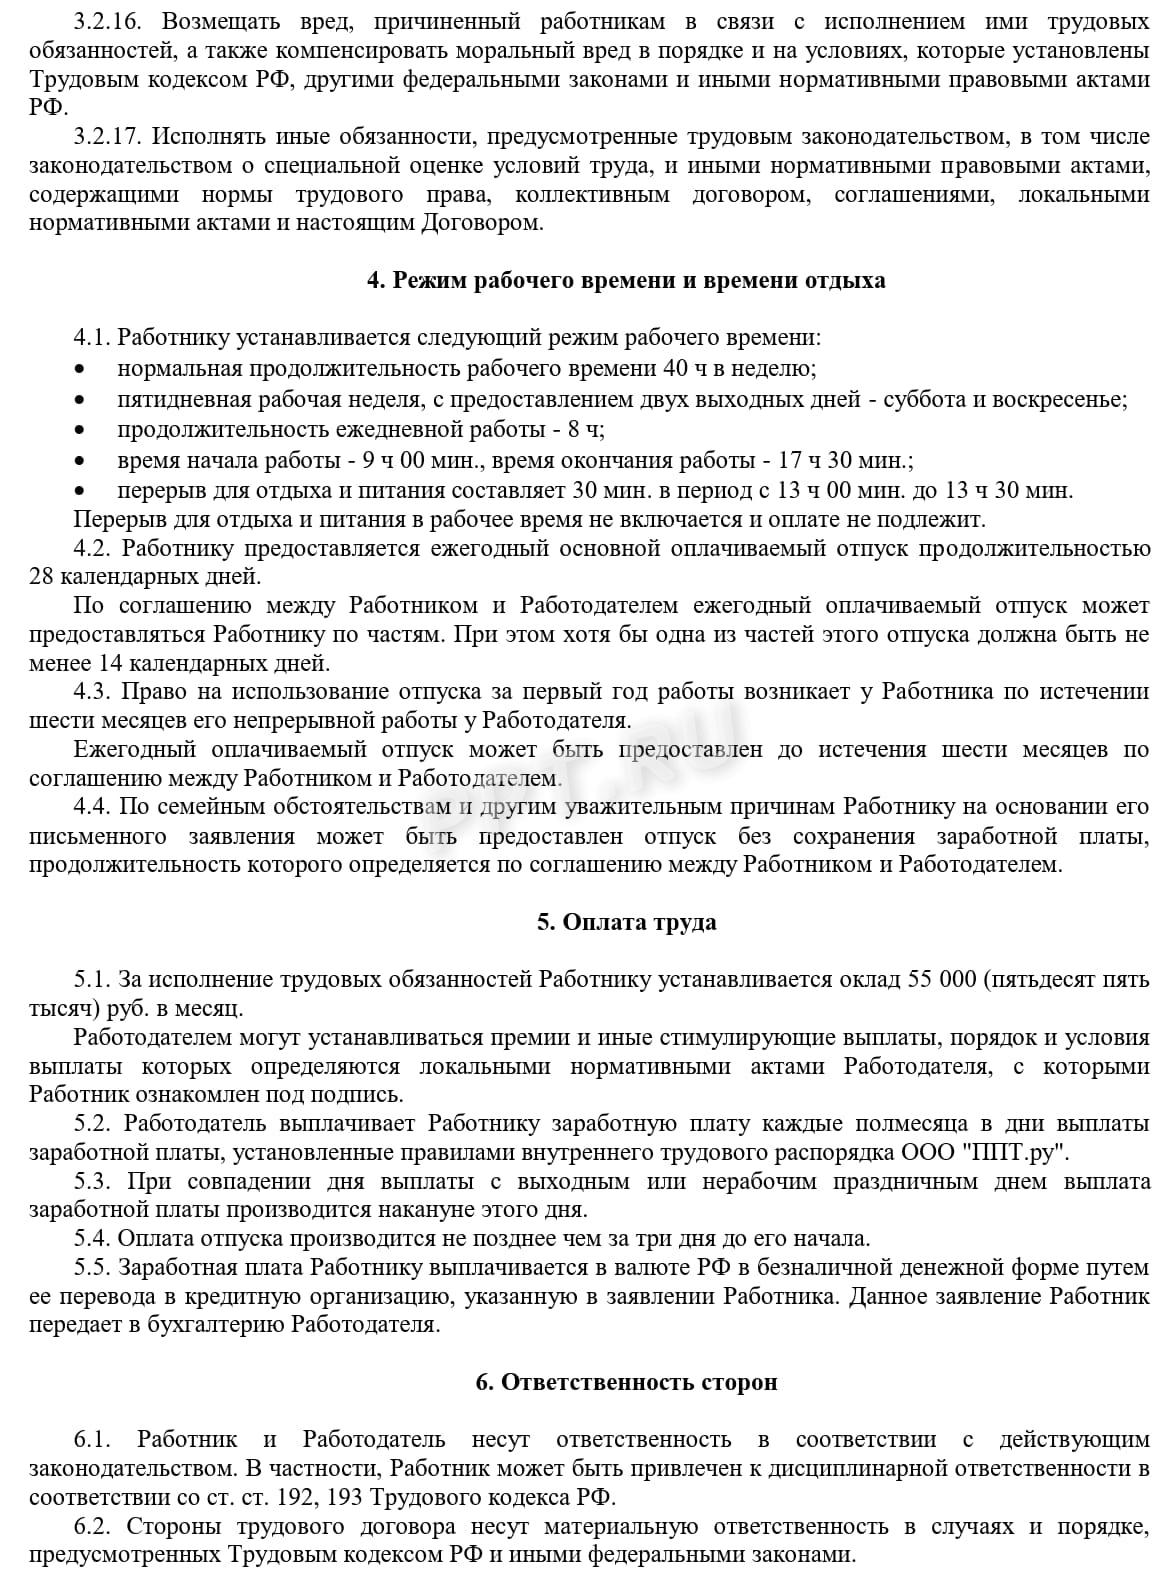 Образец трудового договора с киргизом, стр. 4